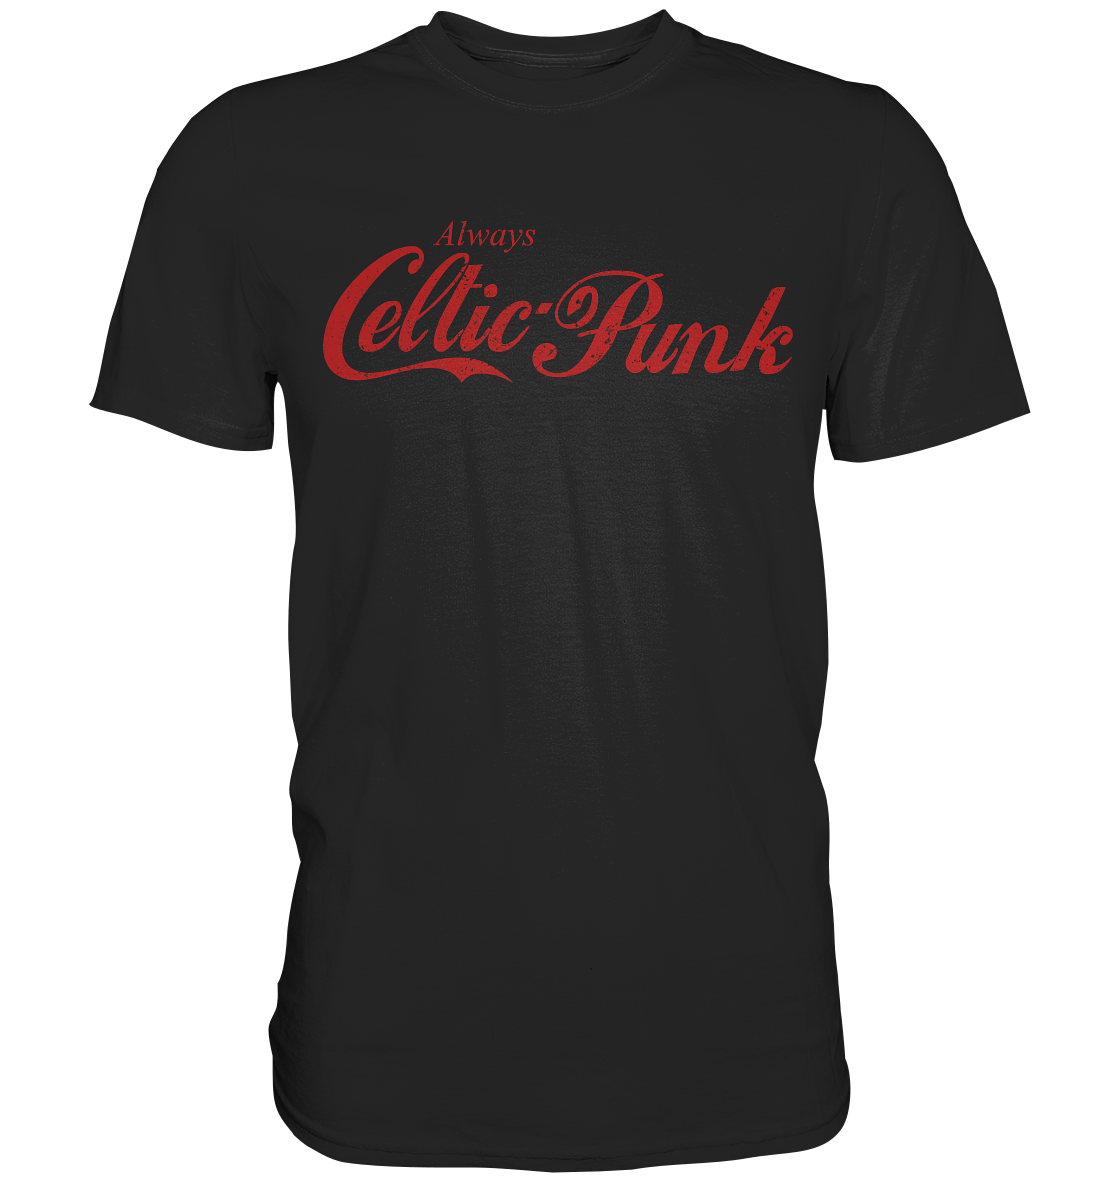 Always "Celtic Punk" - Premium Shirt